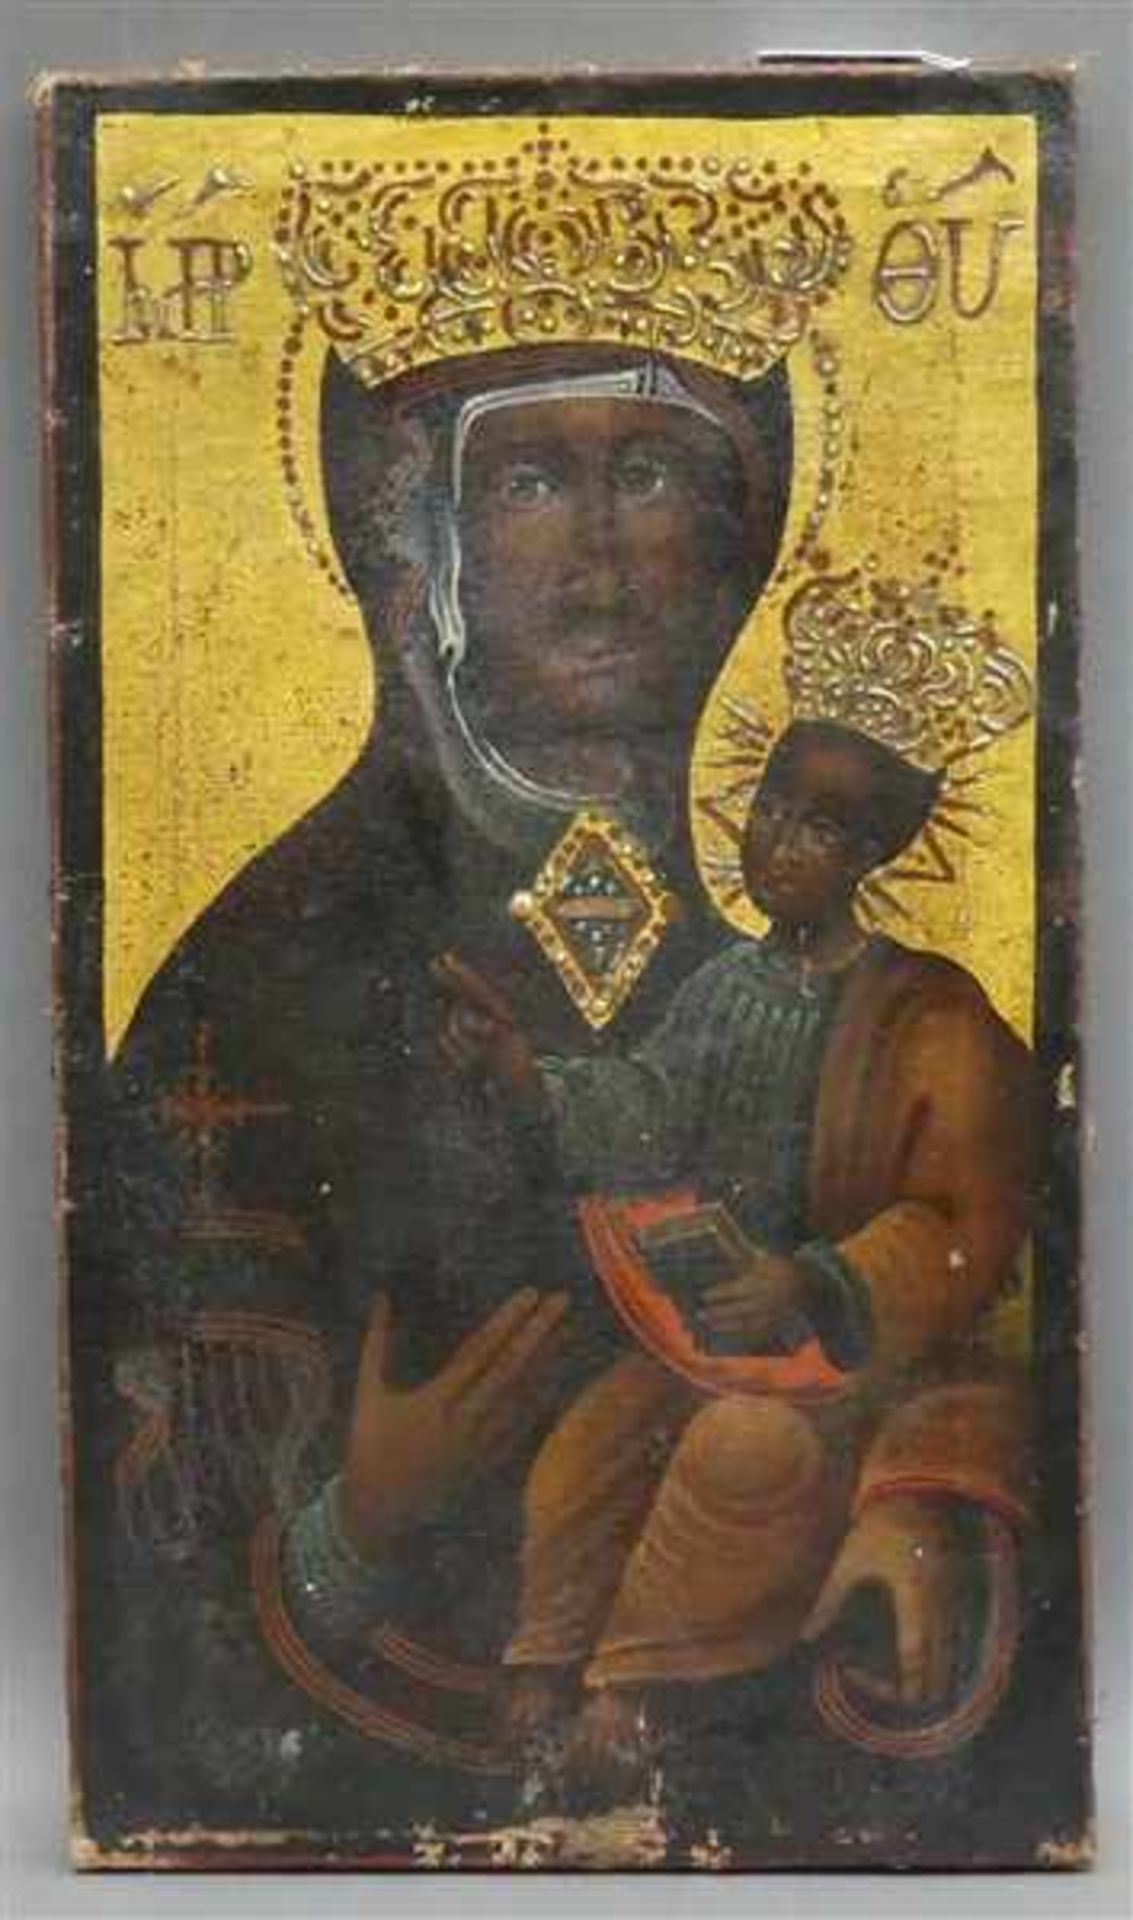 UnbekanntÖl auf Leinen, gekrönte schwarze Madonna mit Jesuskind, Mitte 19. Jh., Randbeschädigung,